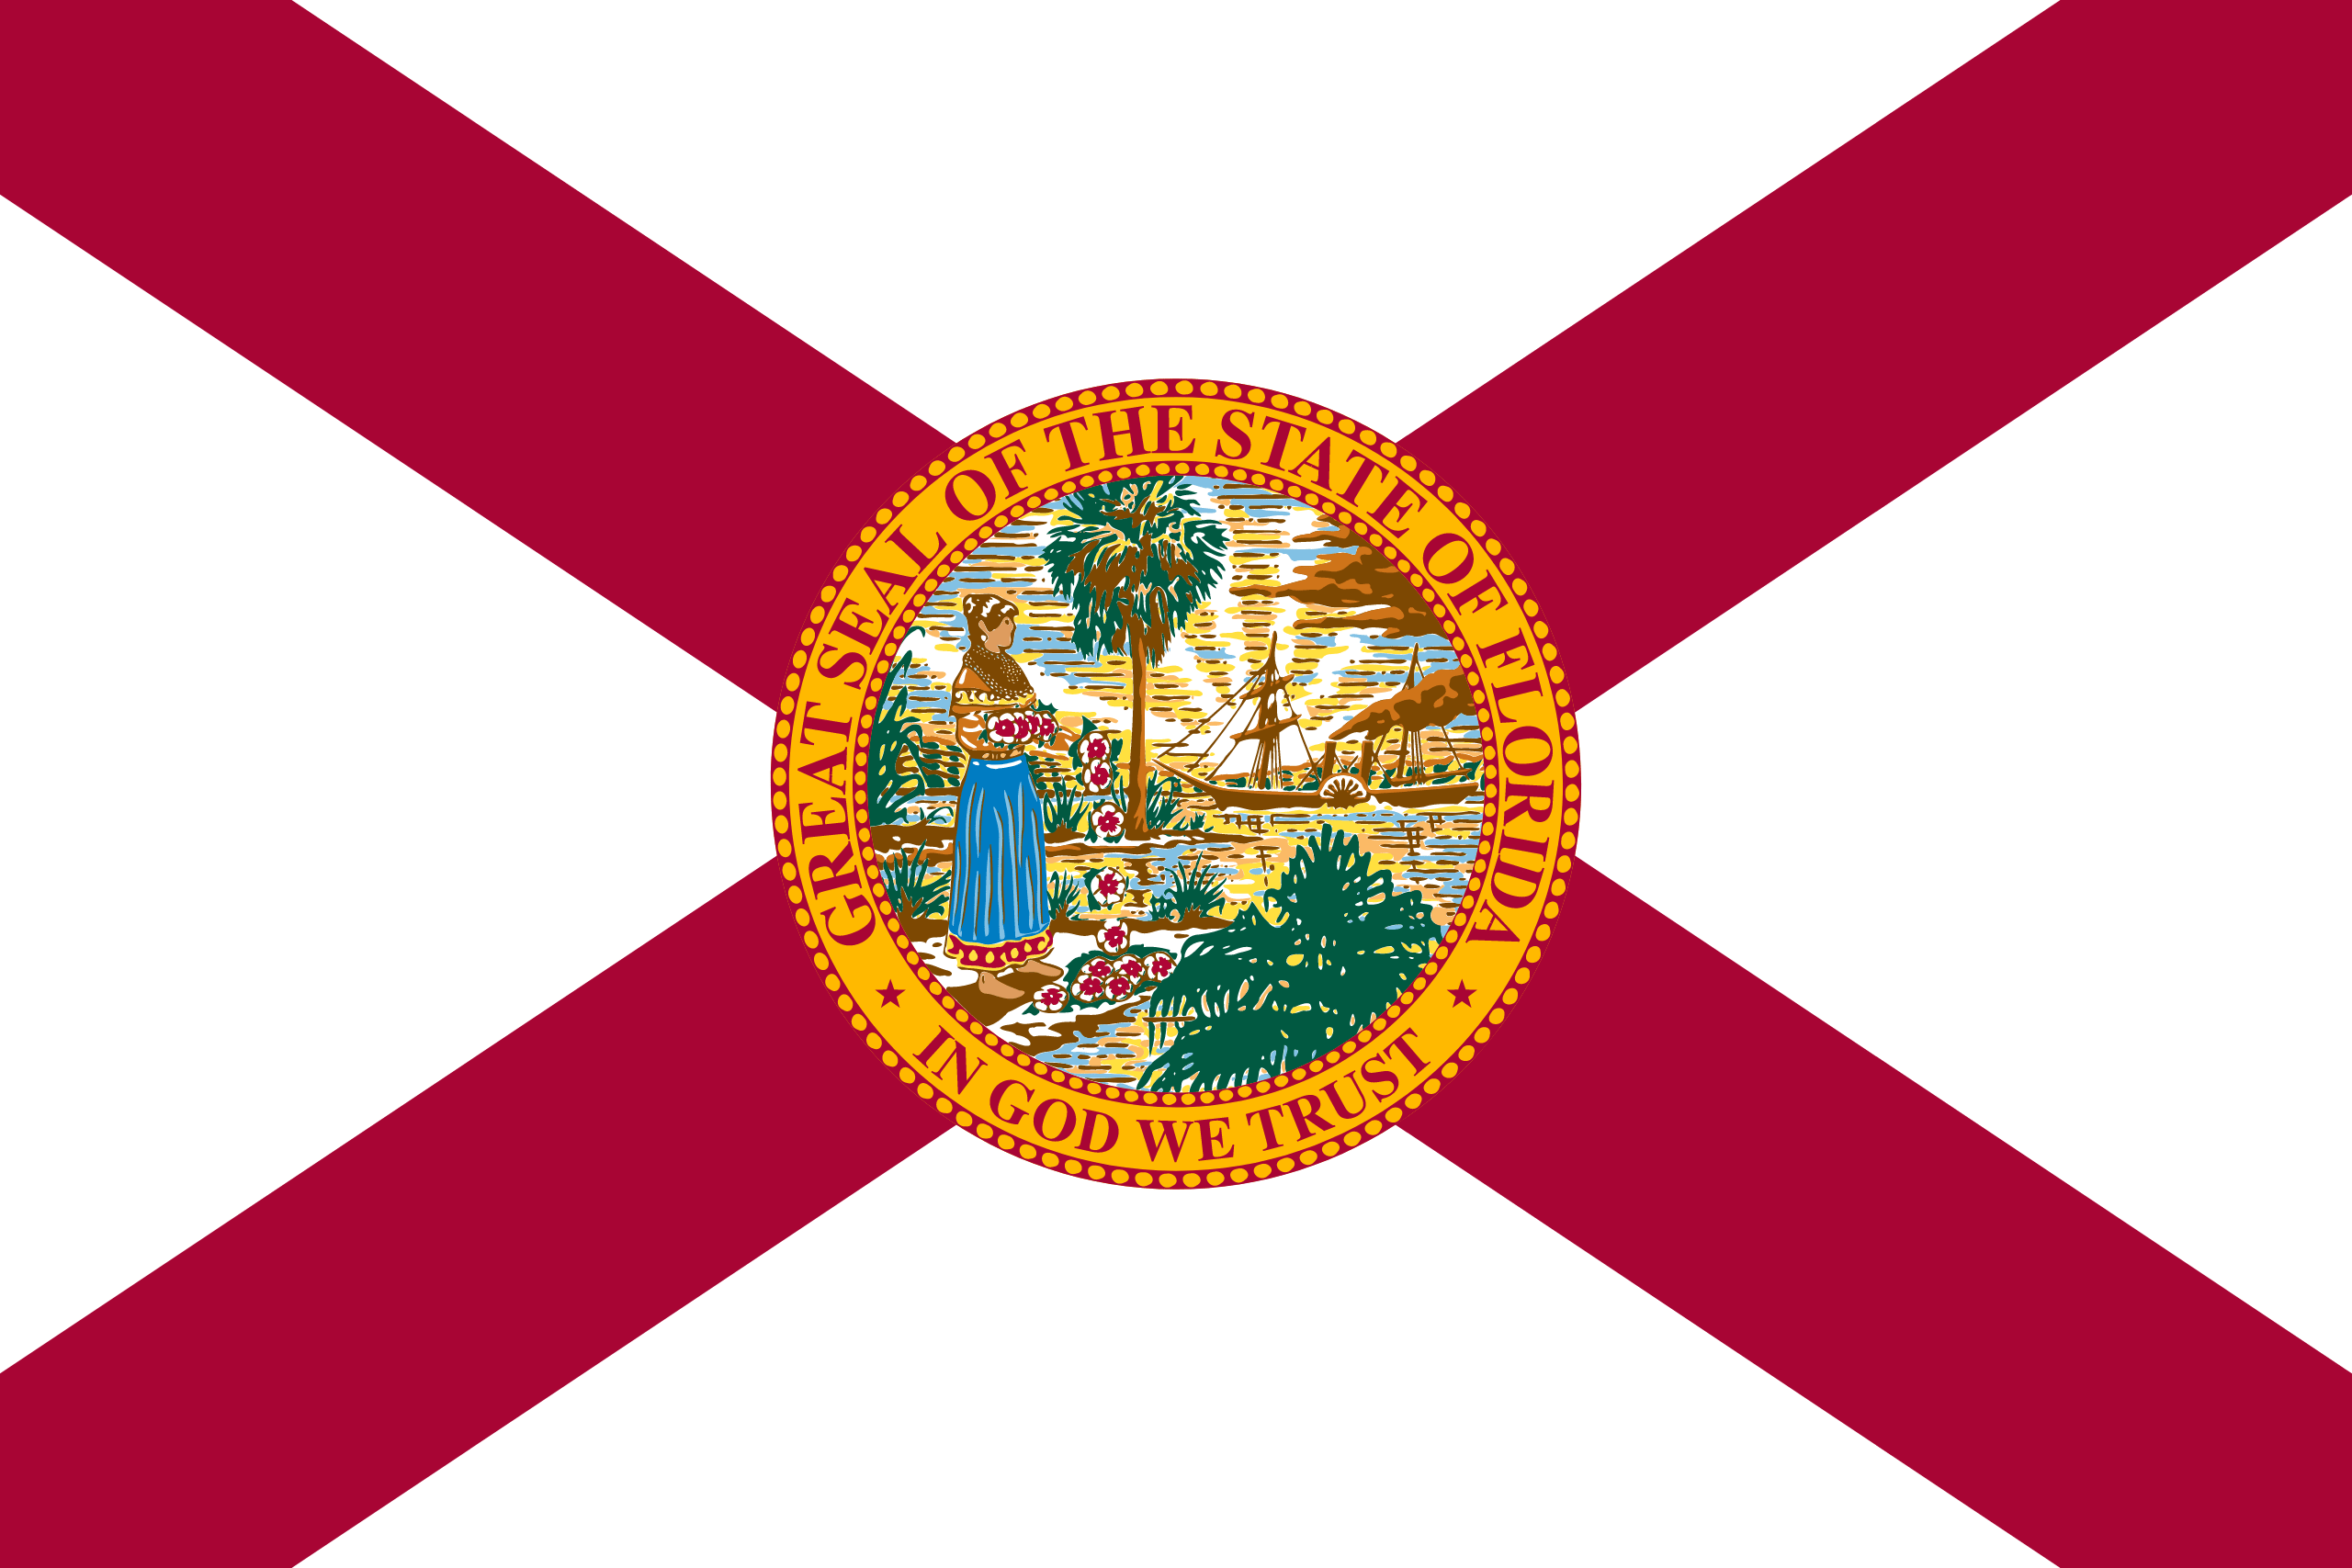 Floride